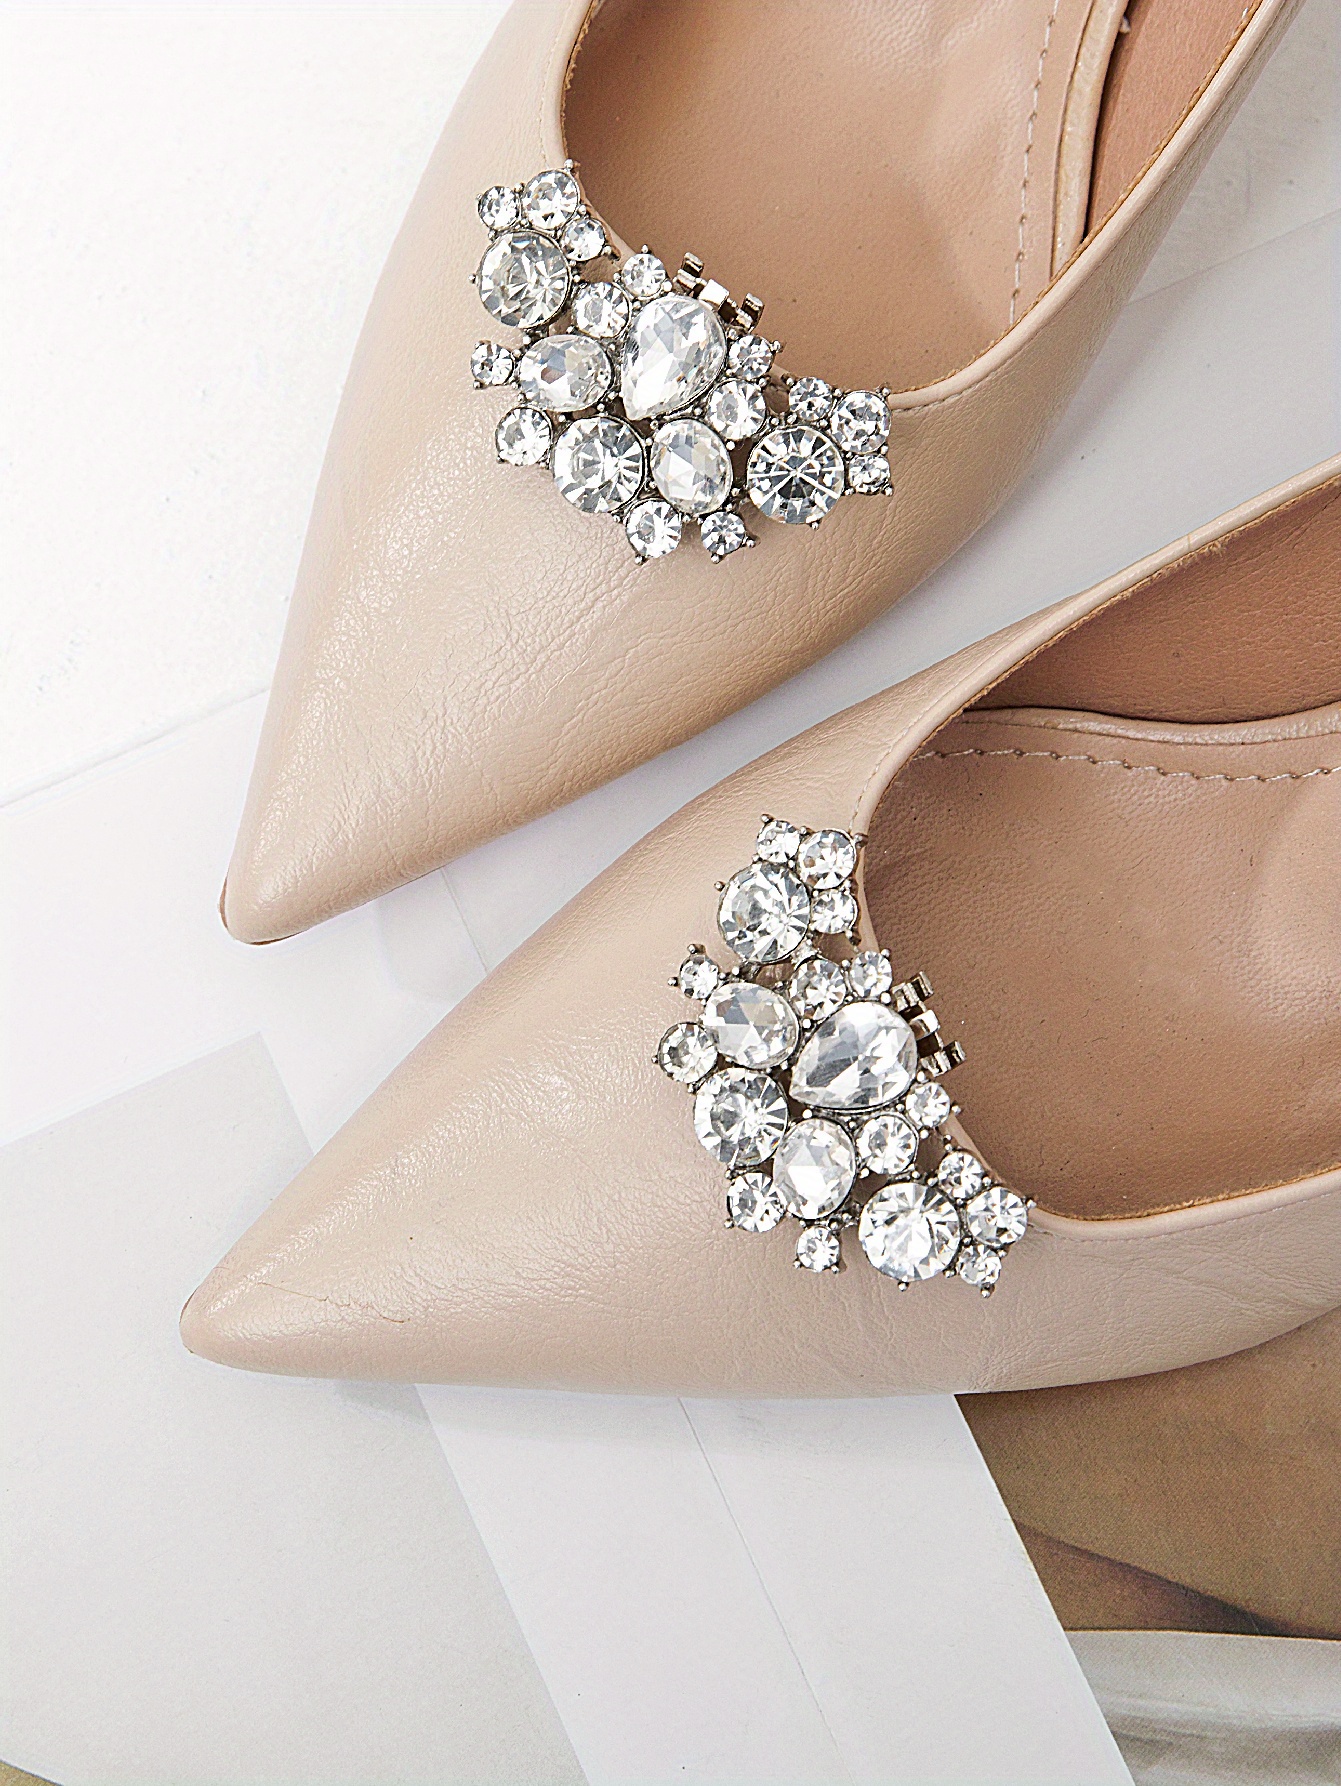 2 Pcs Wedding Pumps Shoe Clips Rhinestone Bow Shoe Accessories Detachable  Shoe Buckle Shoe Embellishment for Women DIY